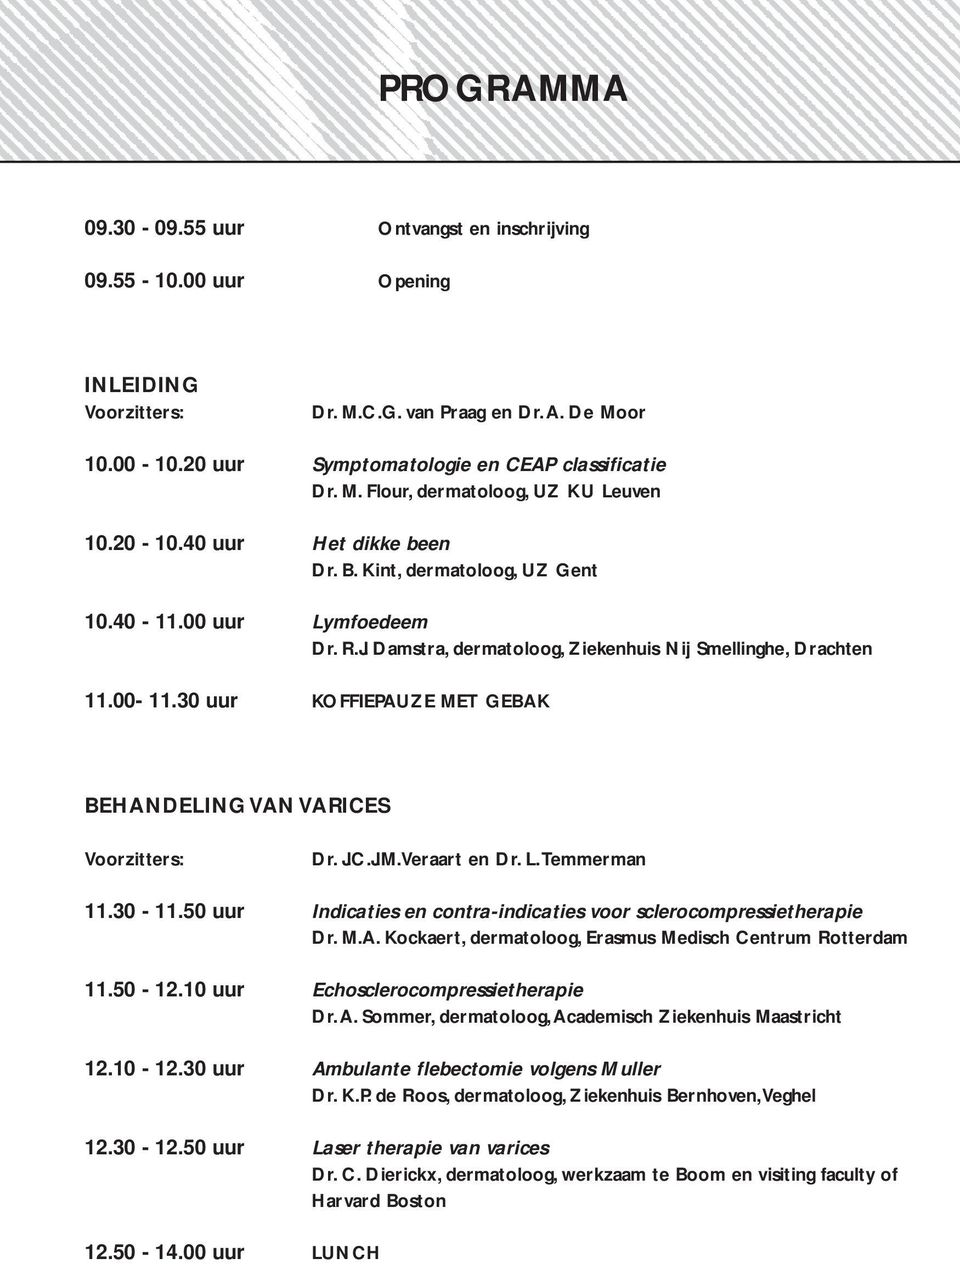 30 uur KOFFIEPAUZE MET GEBAK BEHANDELING VAN VARICES Voorzitters: Dr. J.C.J.M.Veraart en Dr. L.Temmerman 11.30-11.50 uur Indicaties en contra-indicaties voor sclerocompressietherapie Dr. M.A. Kockaert,, Erasmus Medisch Centrum Rotterdam 11.